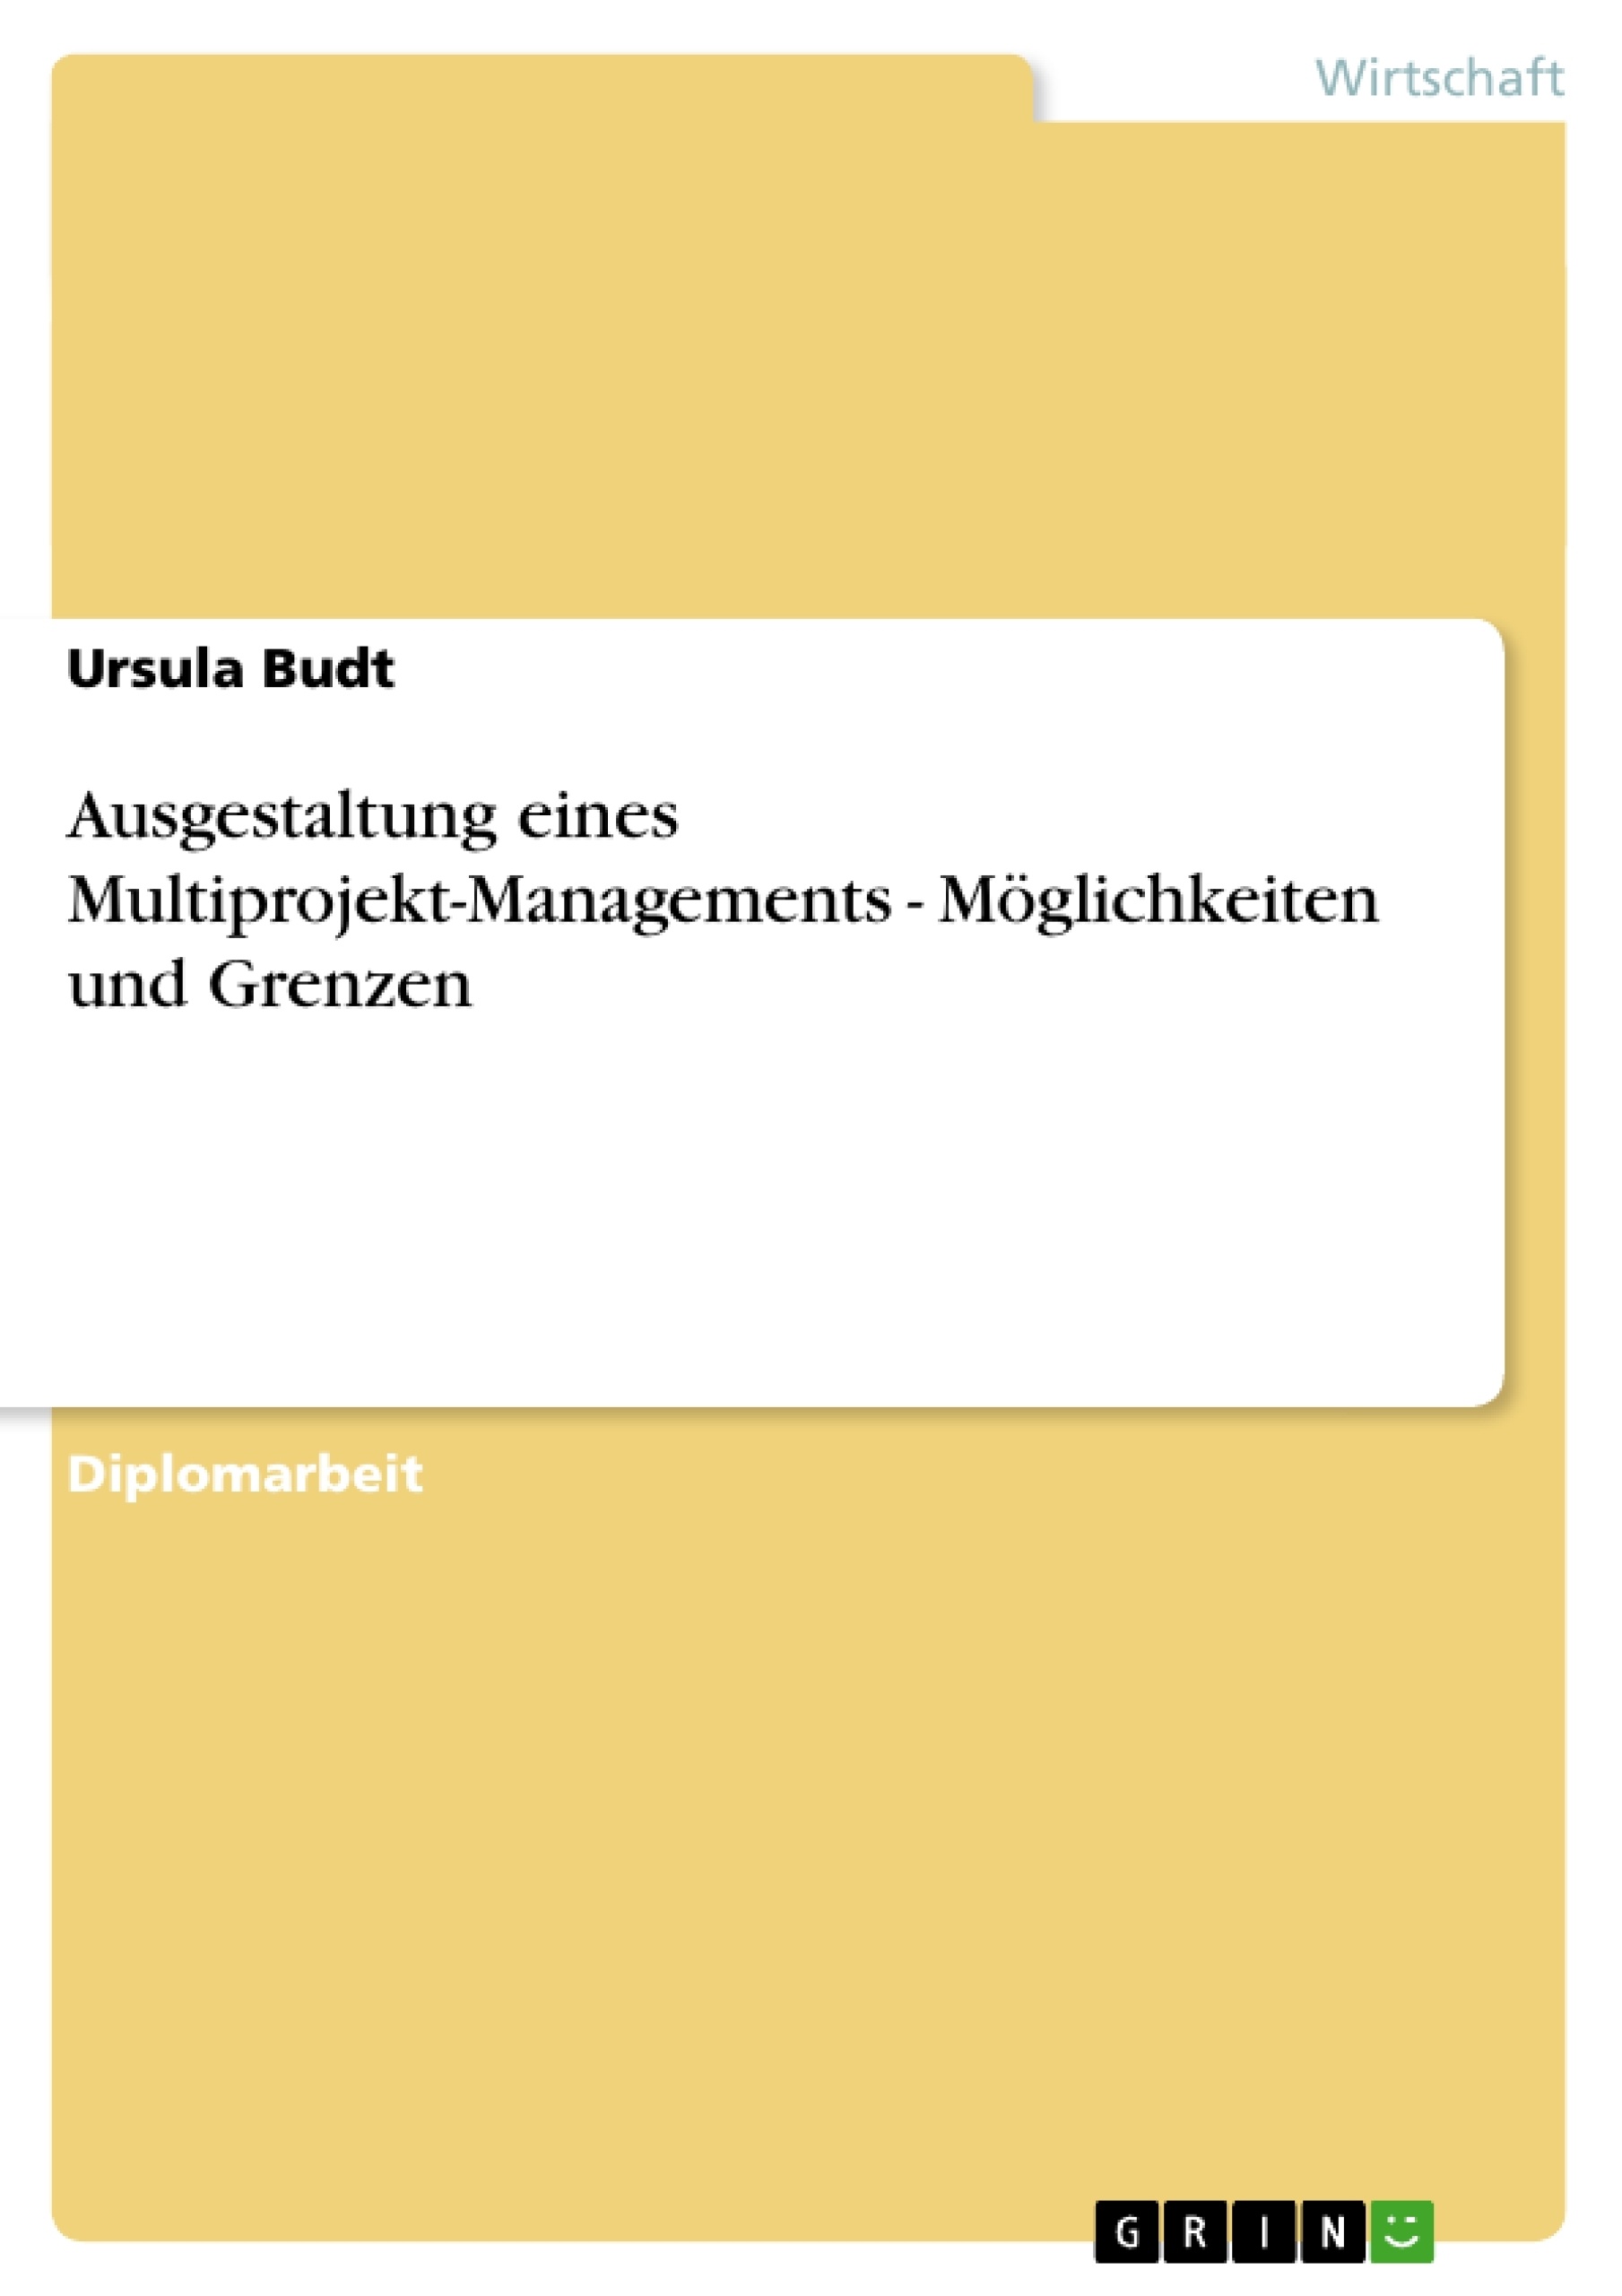 Title: Leitfaden für die Umsetzung von Multiprojekt-Management. Möglichkeiten und Grenzen.